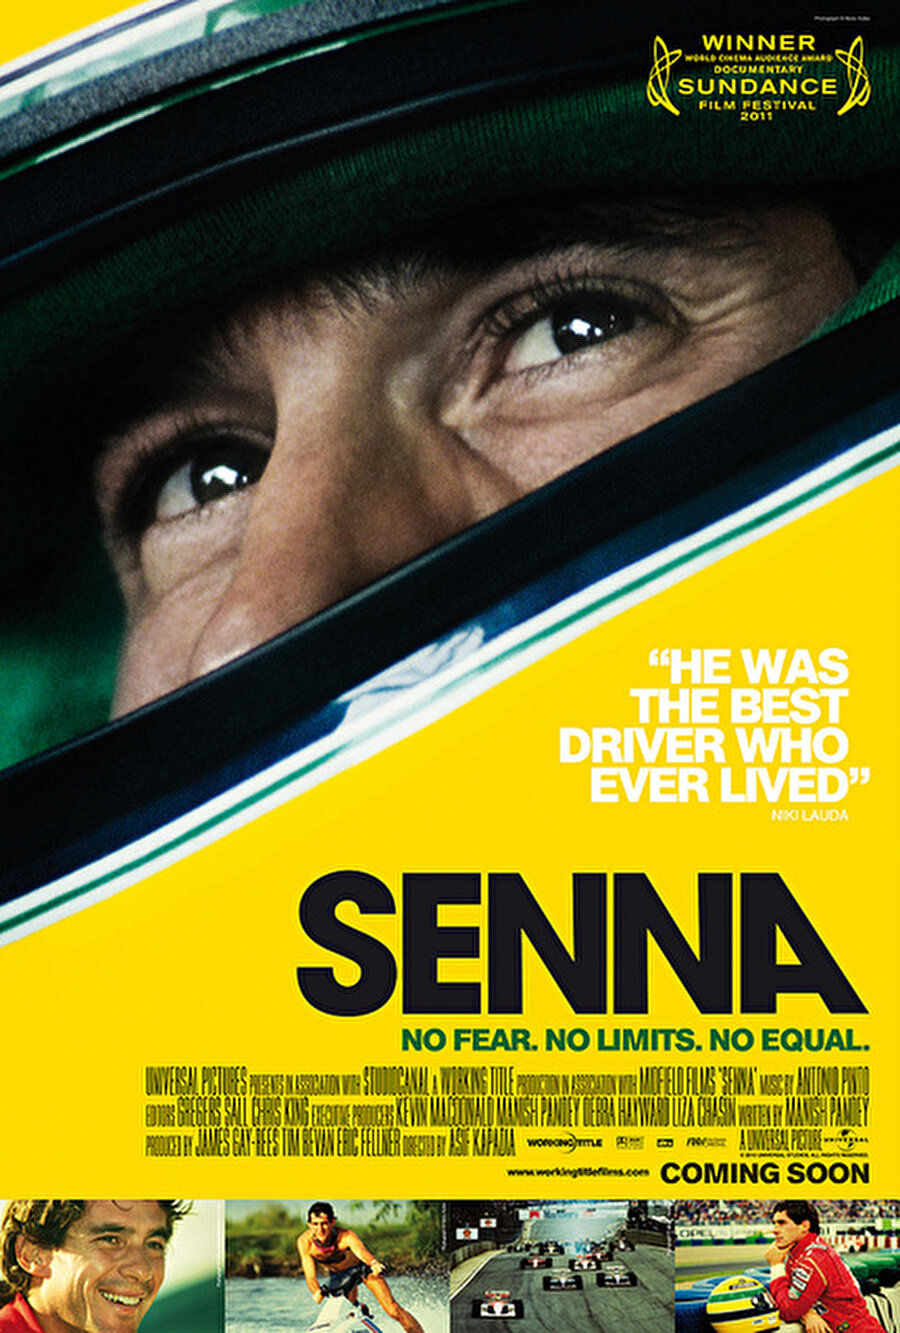 Bonus: Ben olsam, bu yazılanlarla yetinmez ve Senna isimli muazzam belgeseli izlerdim.
